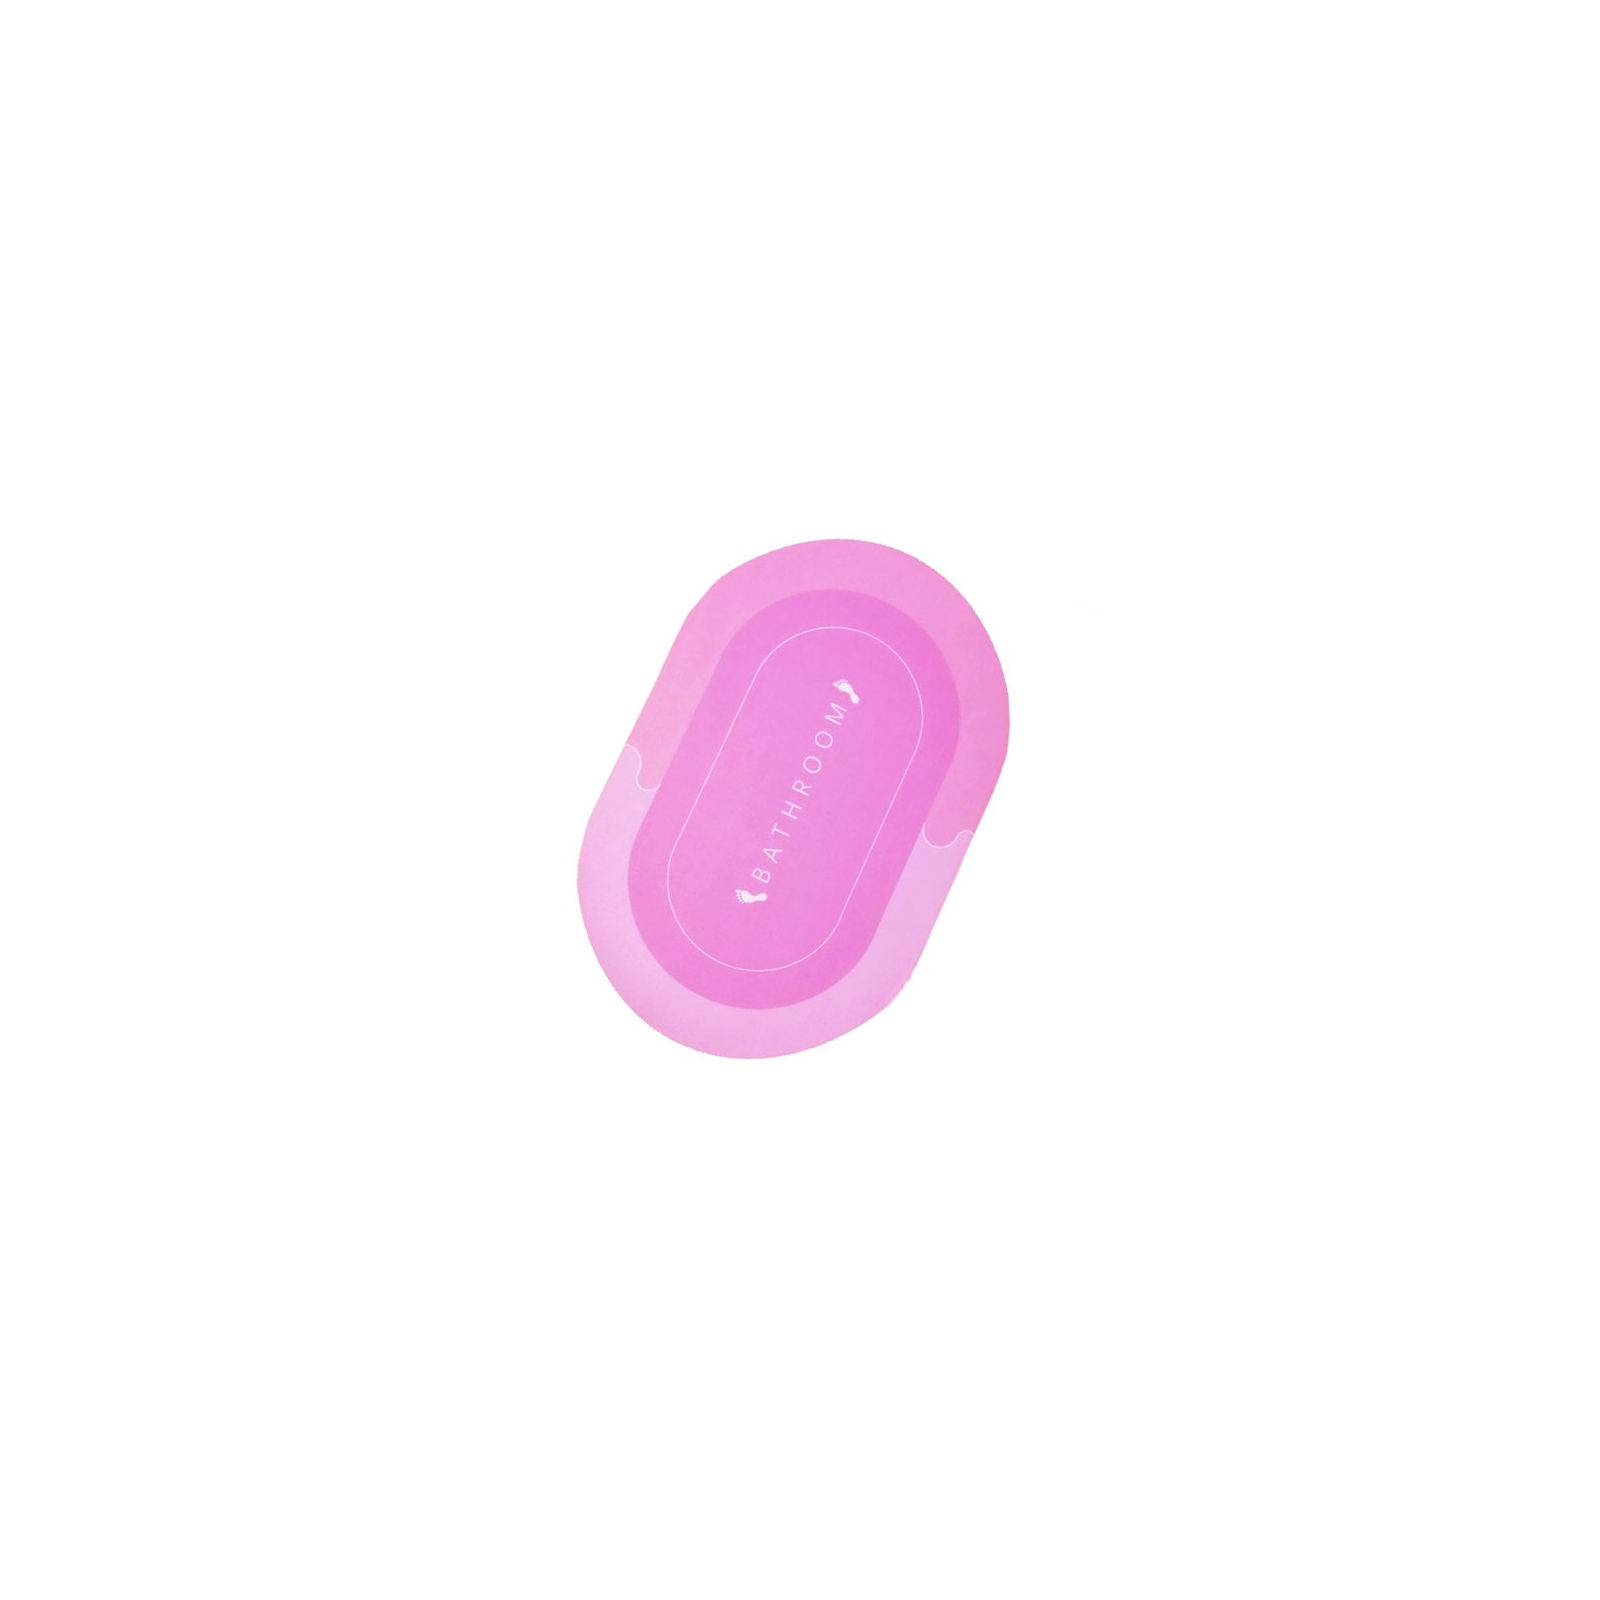 Коврик для ванной Stenson суперпоглощающий 40 х 60 см овальный светло-розовый (R30939 l.pink)